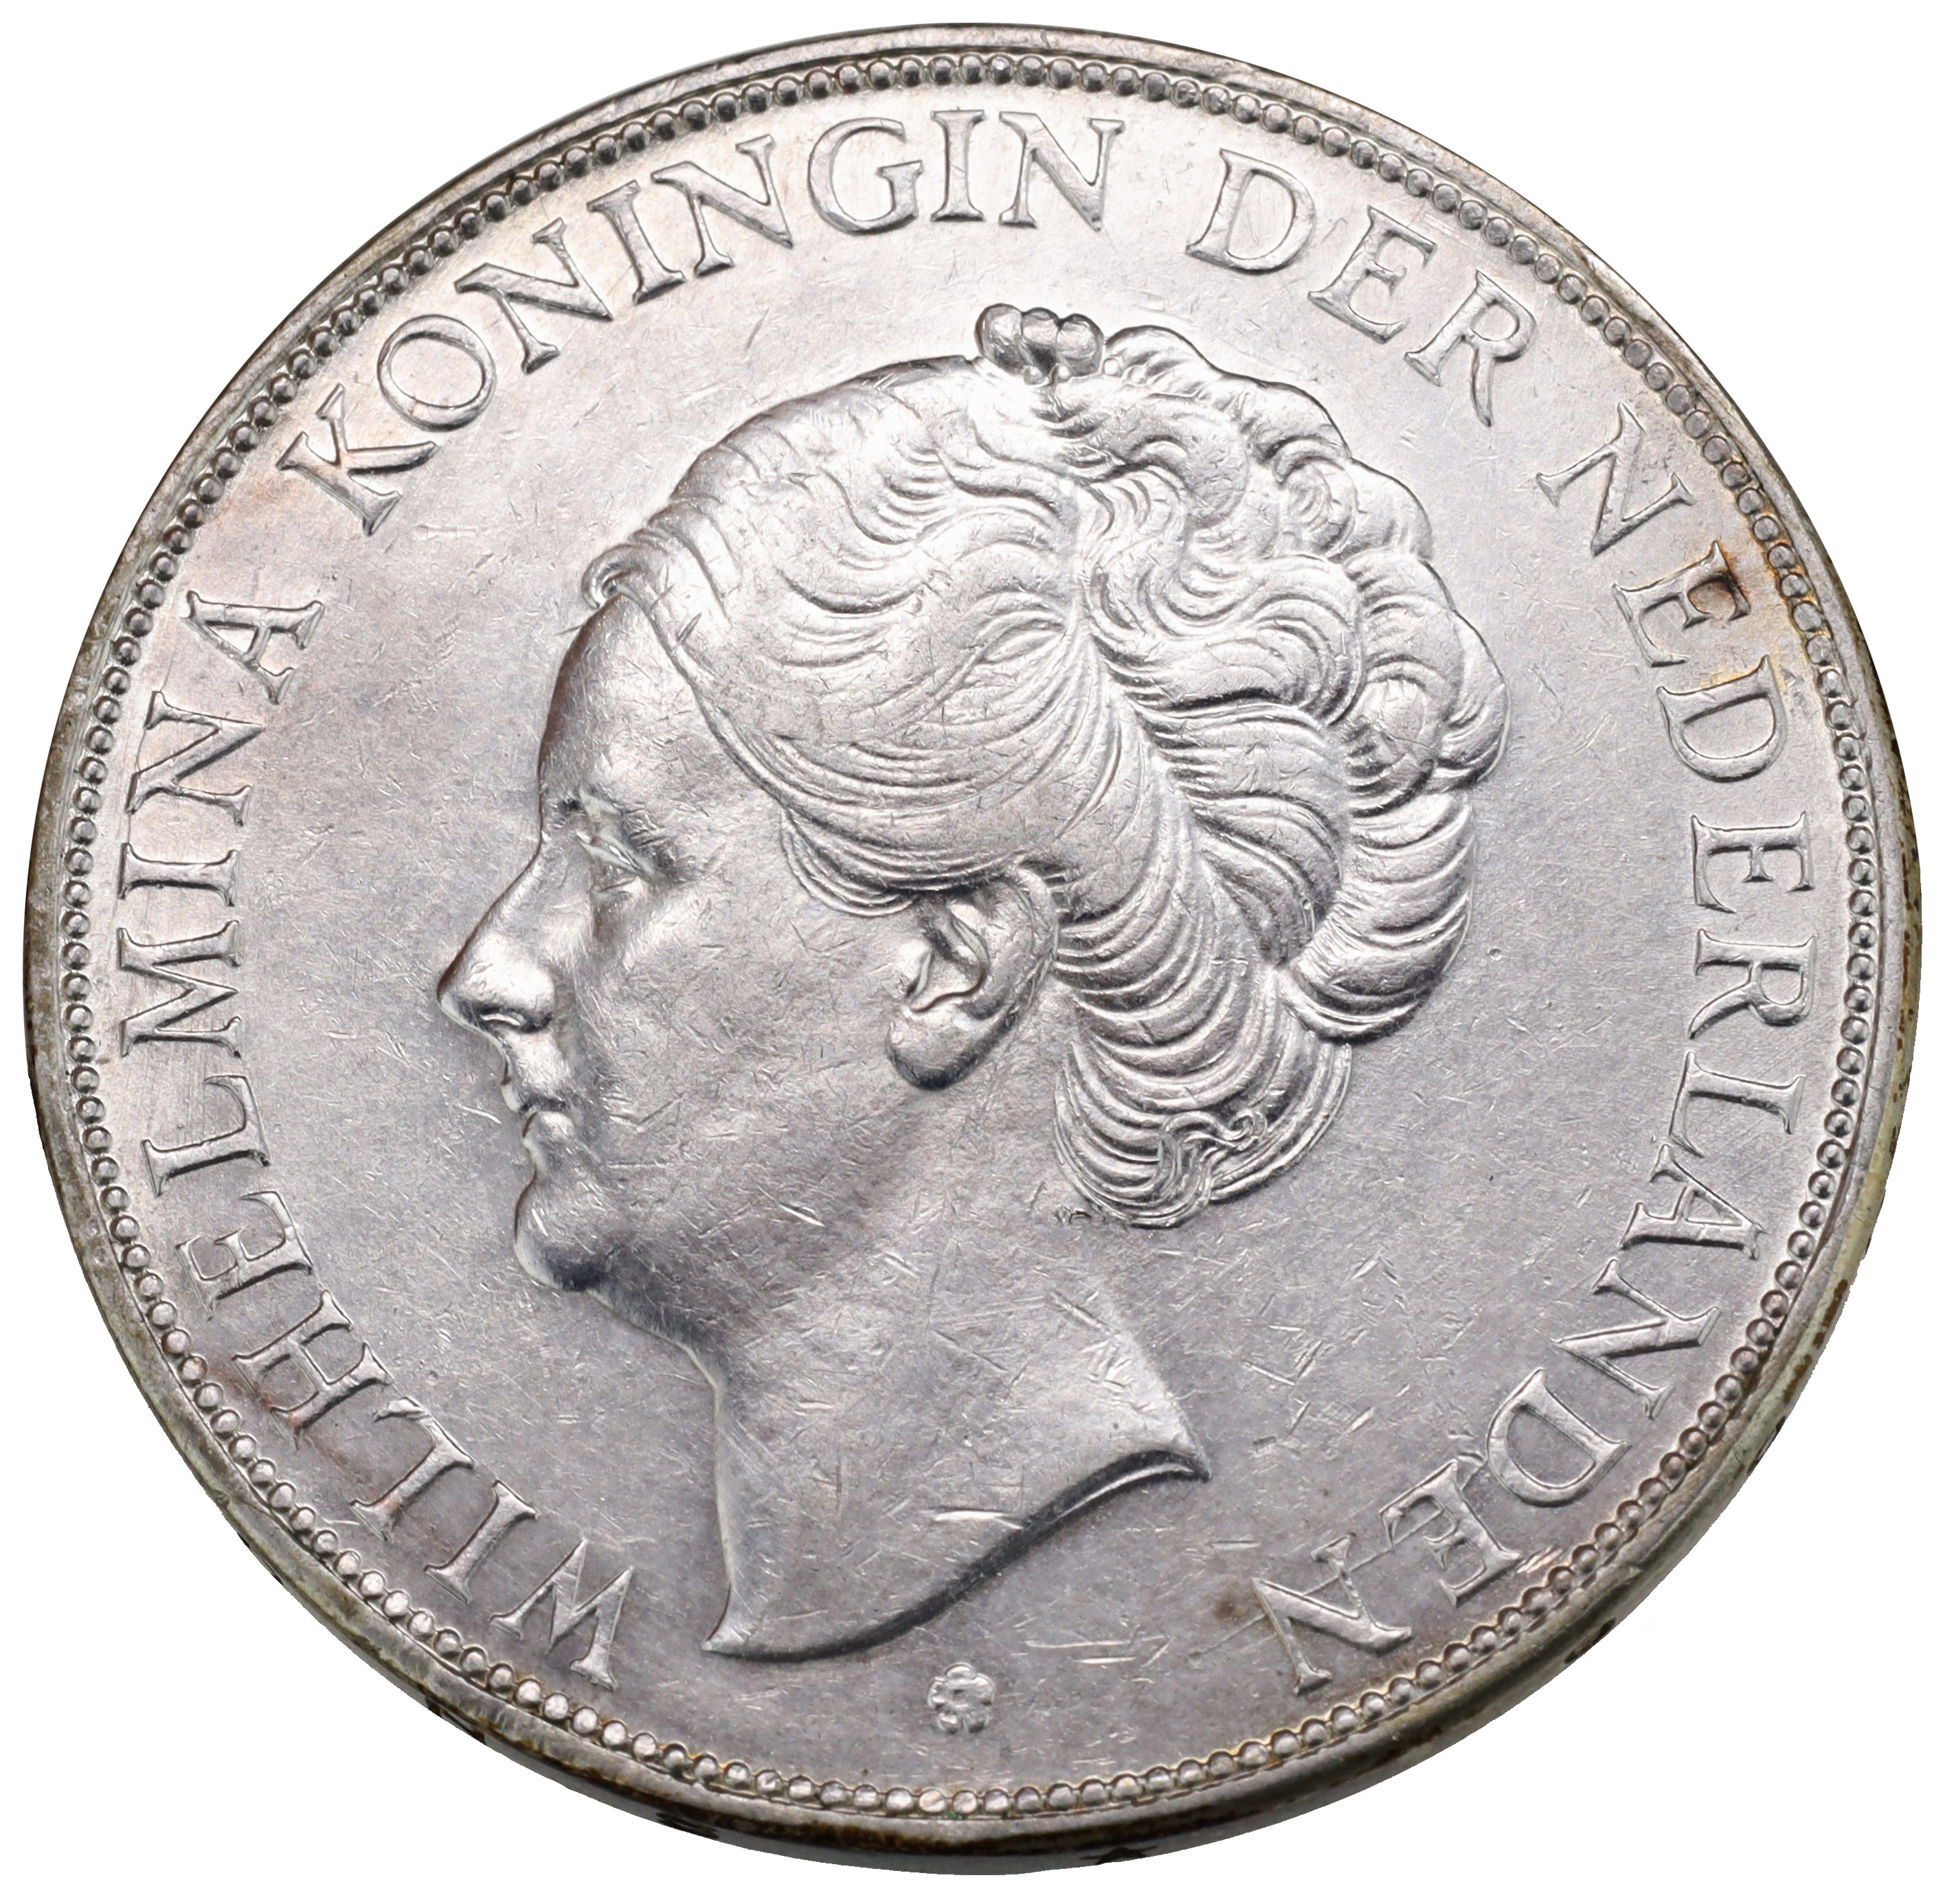 1977年オランダ領アンティル発行200ギルダー金貨 - 旧貨幣/金貨/銀貨 